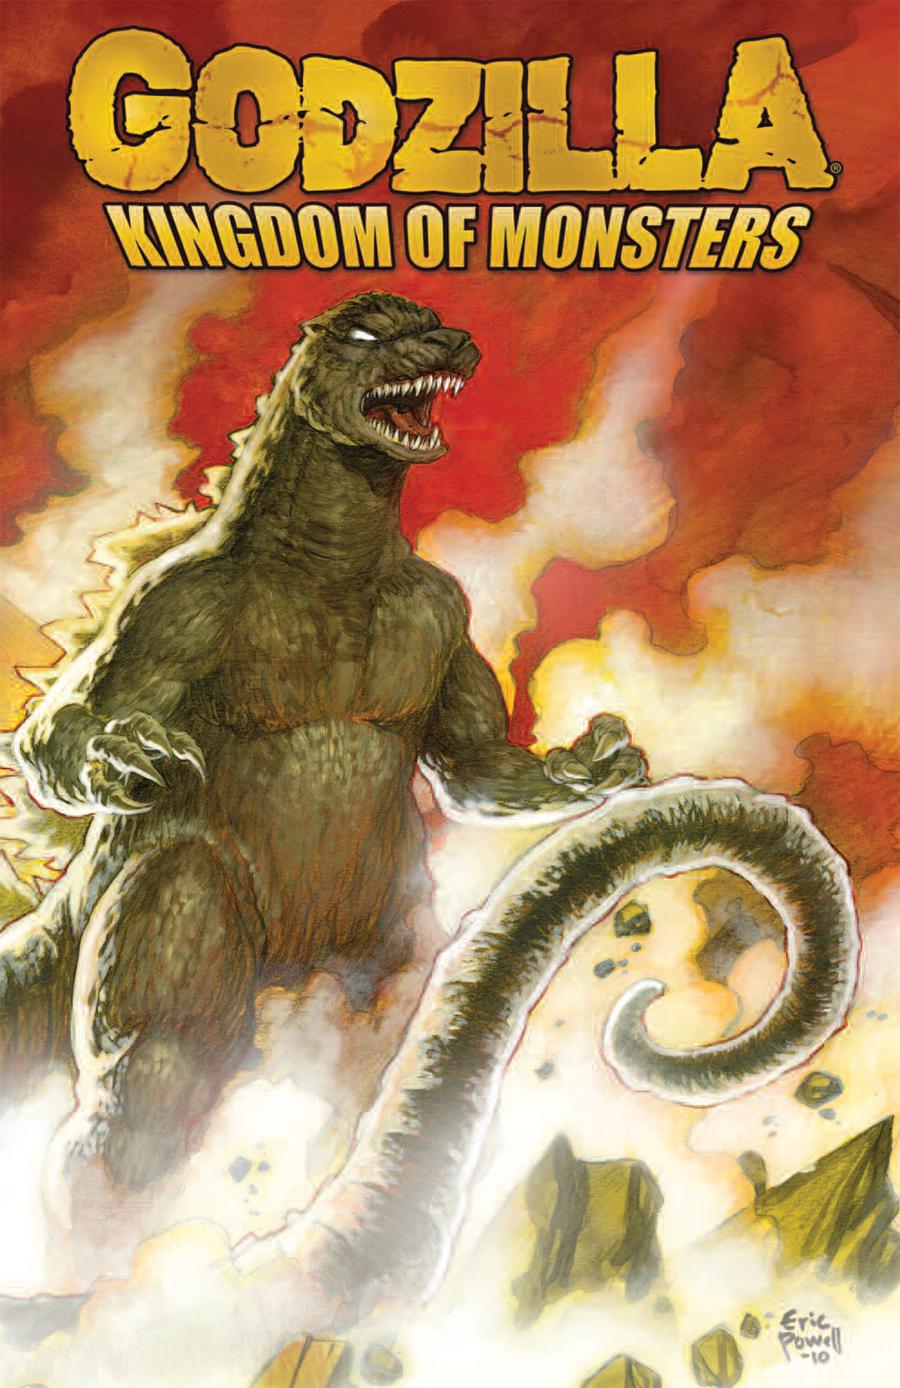 Godzilla Kingdom Of Monsters TP